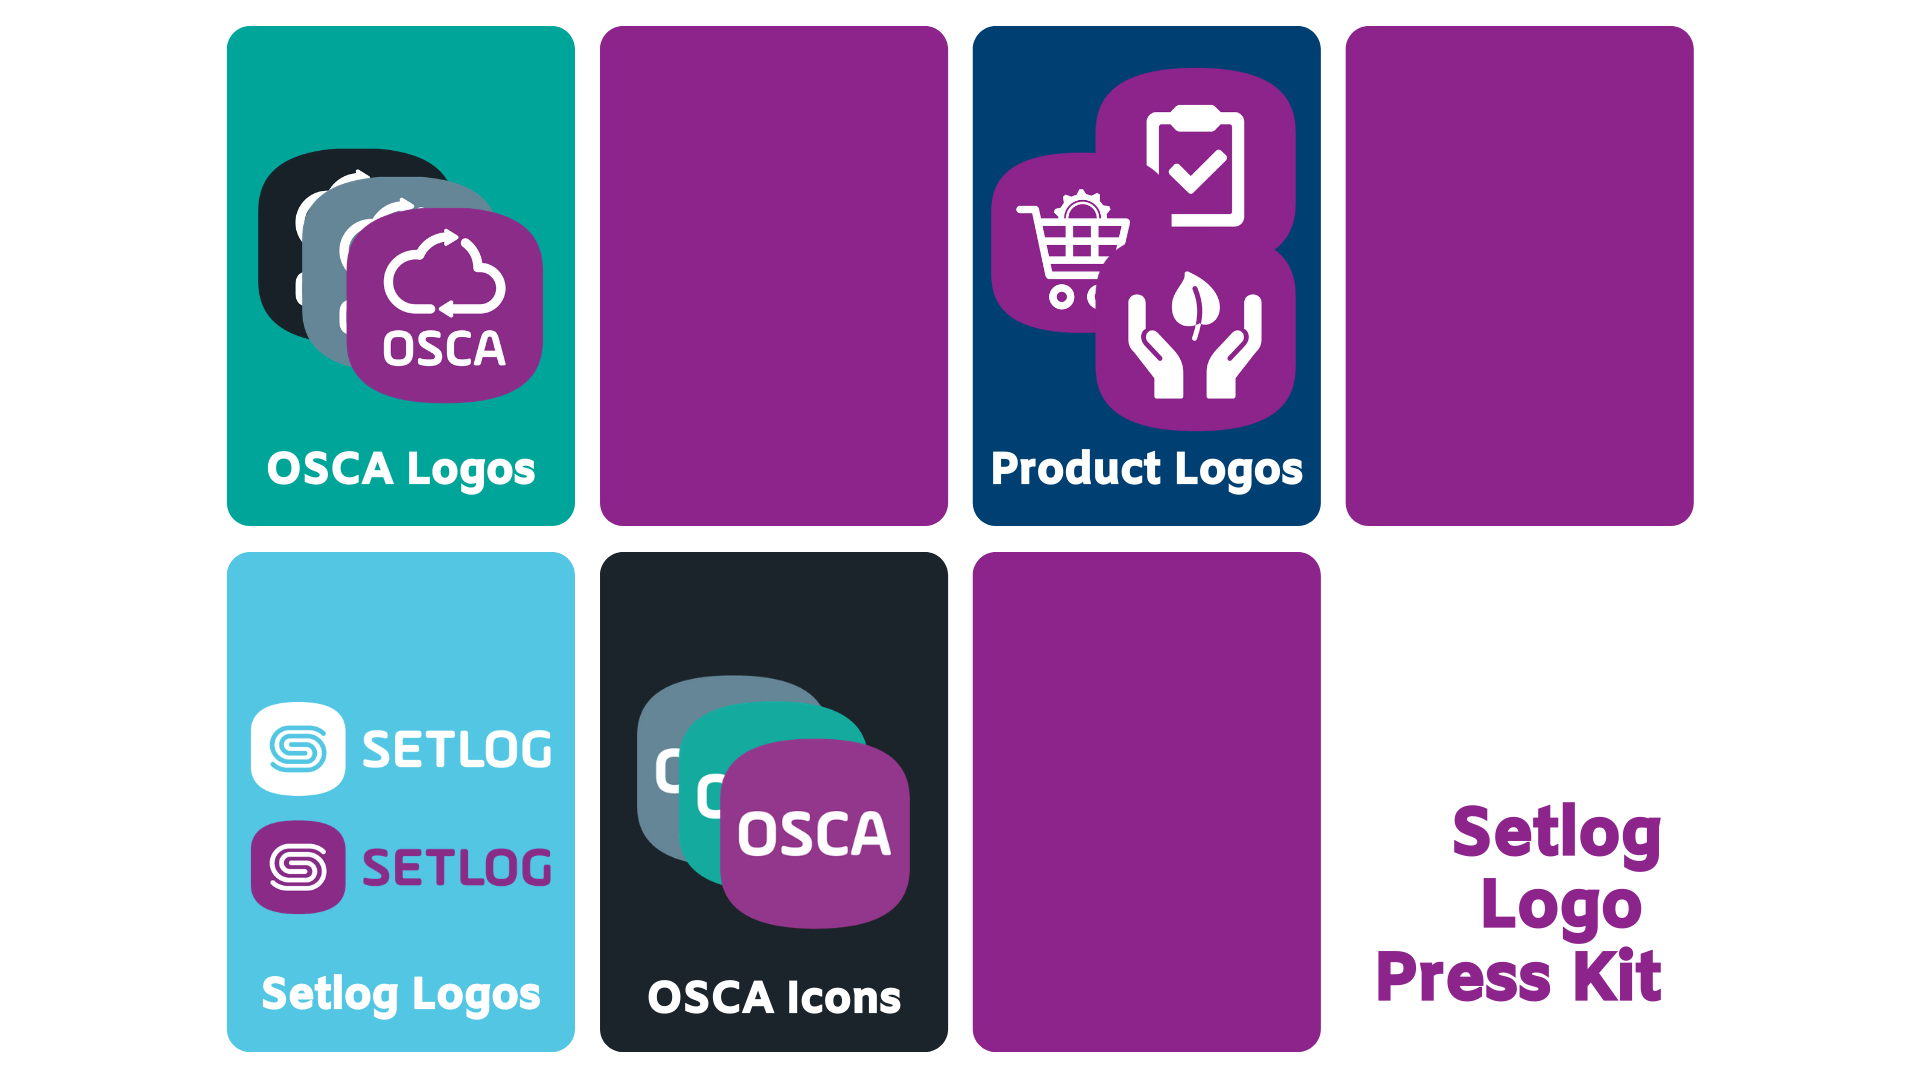 Setlog Logo Presse Kit für Supply Chain News